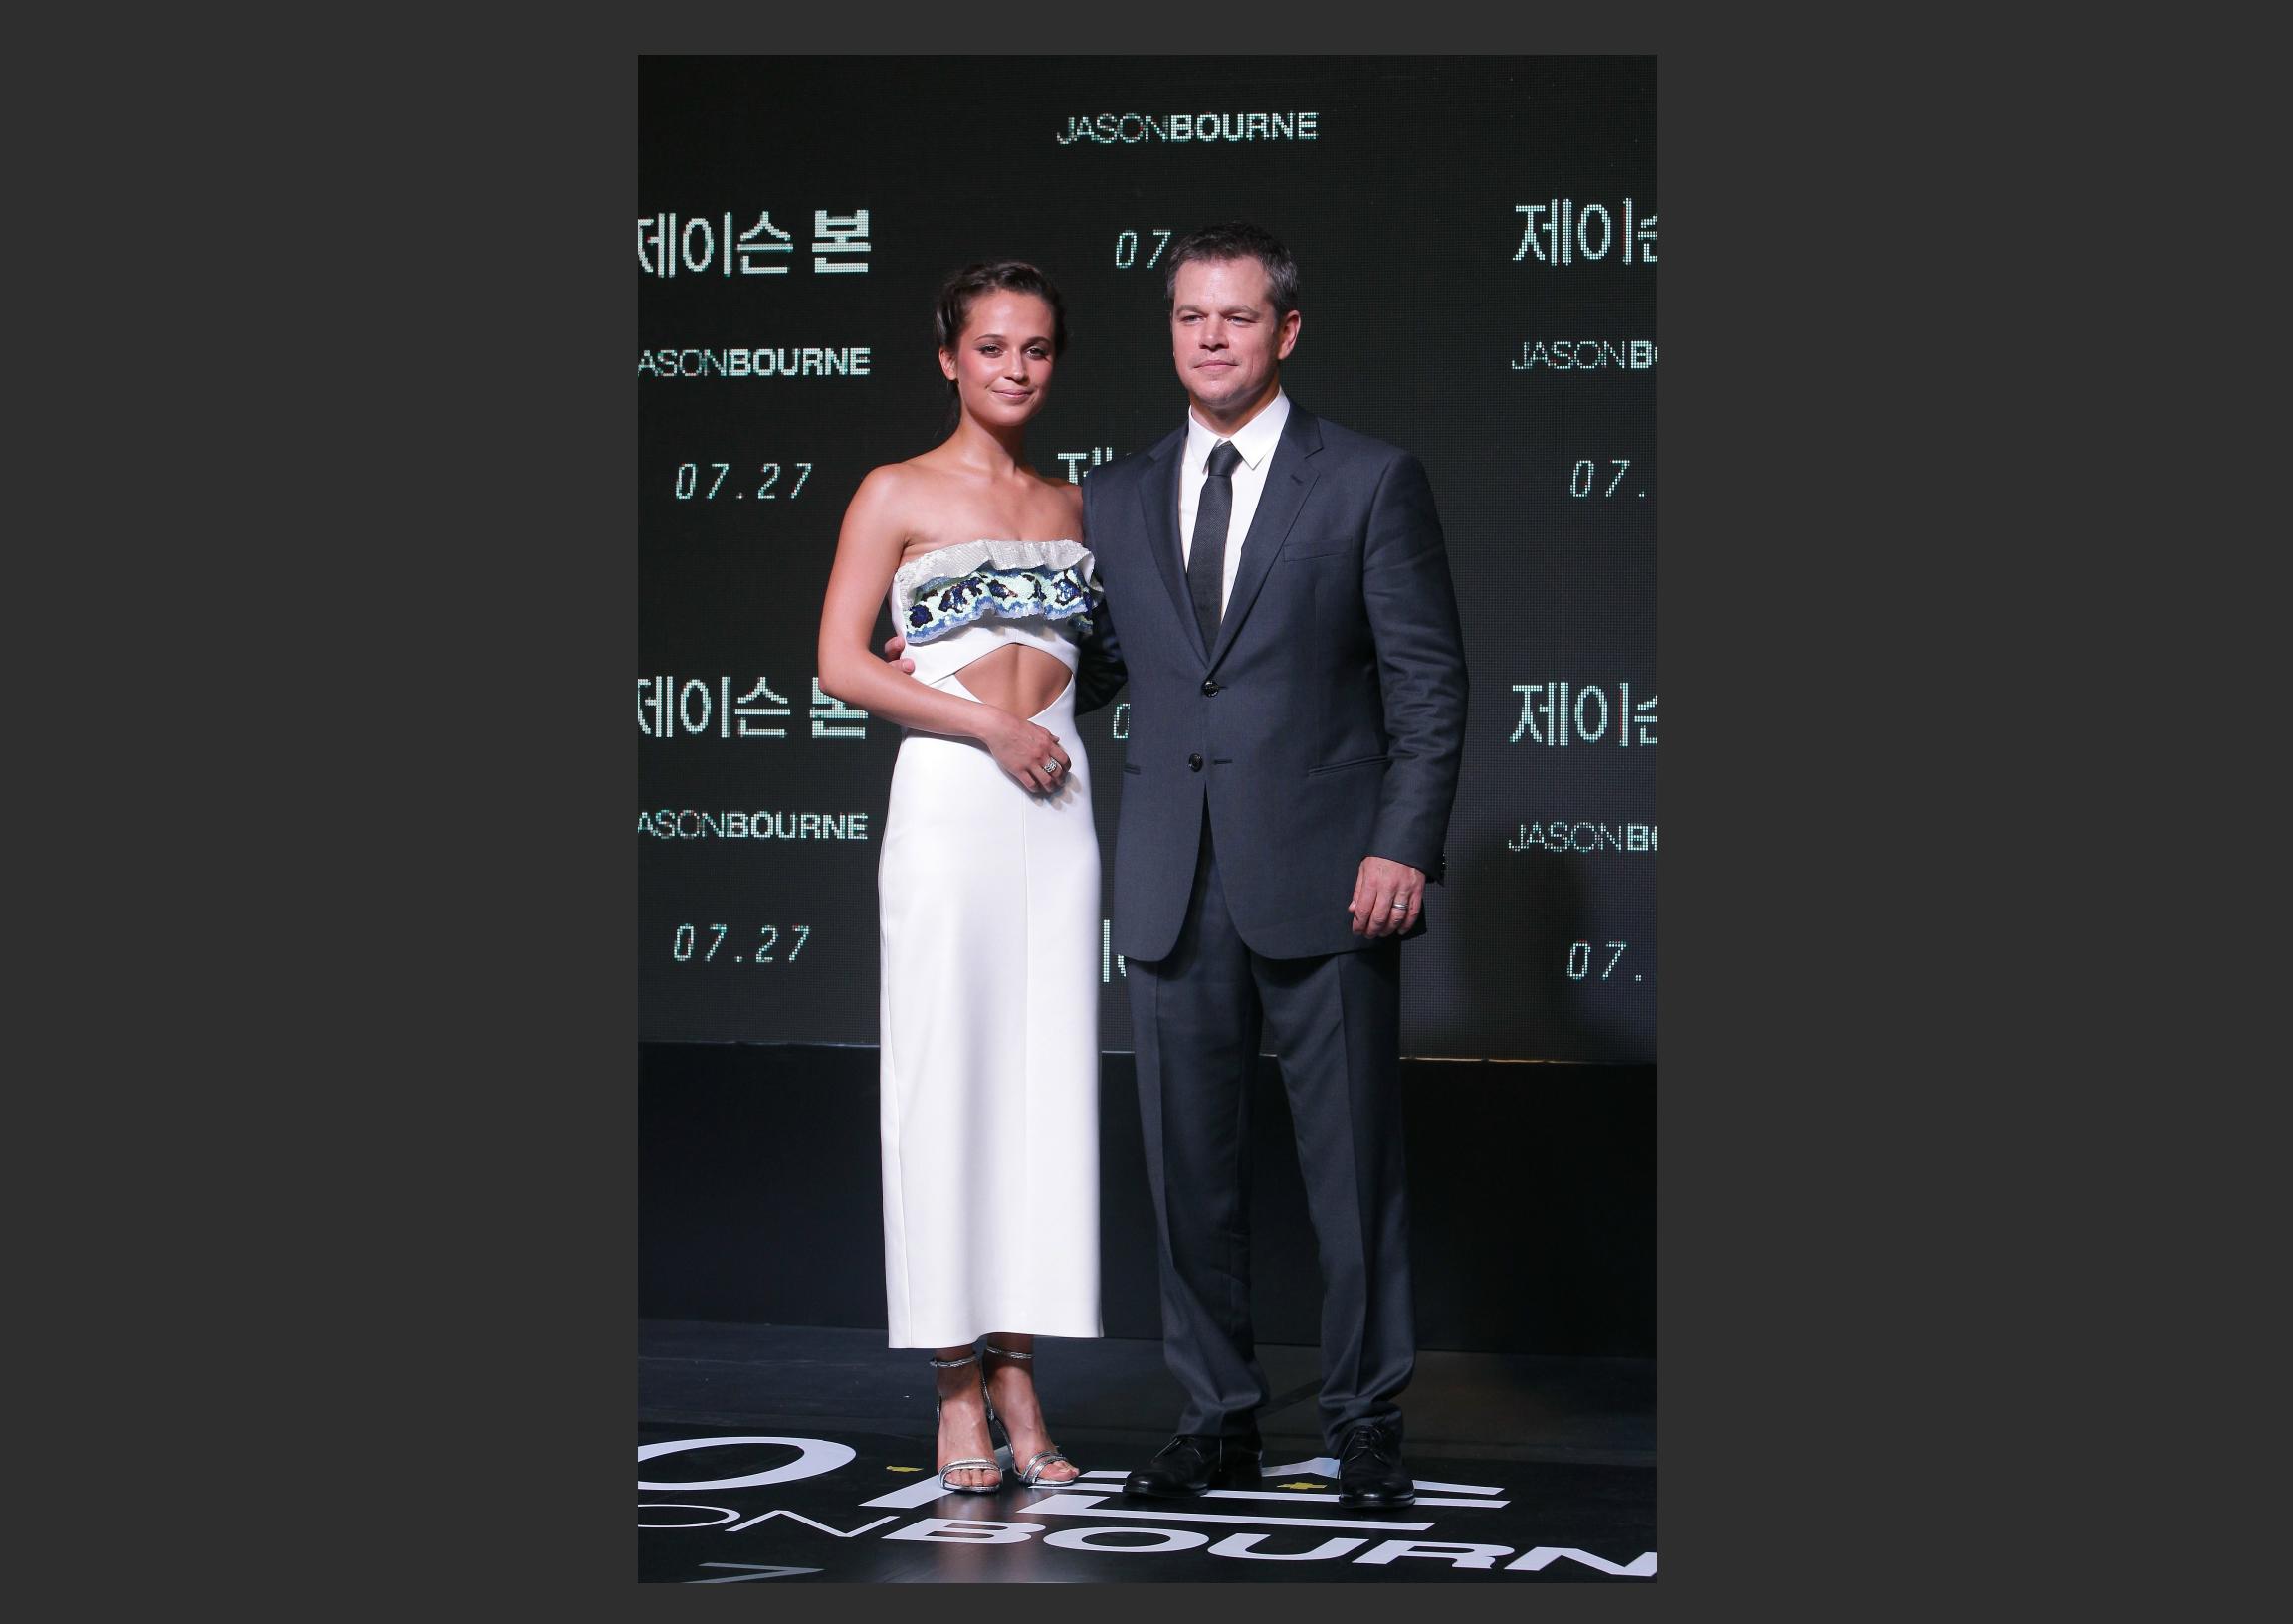 Il Premio Oscar Alicia Vikander in Louis Vuitton per Jason Bourne